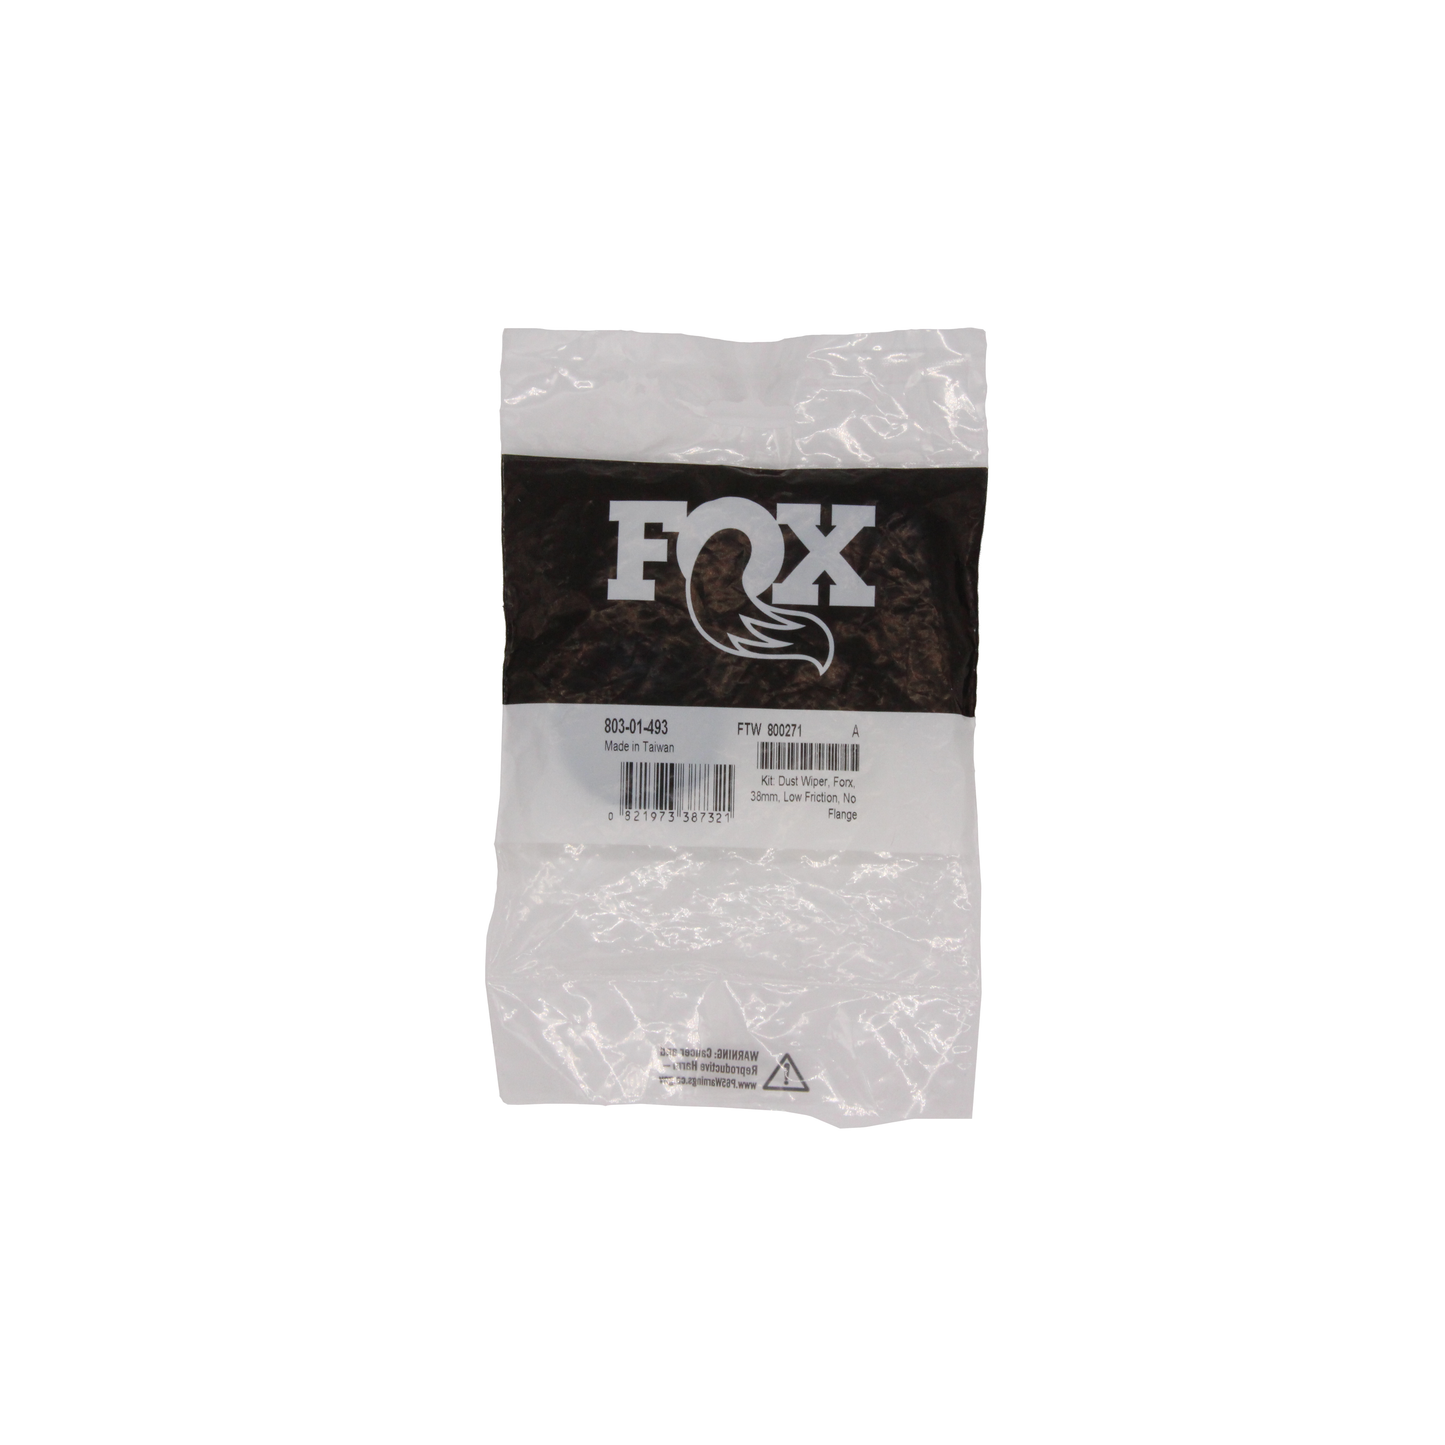 Fox 38 Lower Leg Seal Kit - 803-01-493